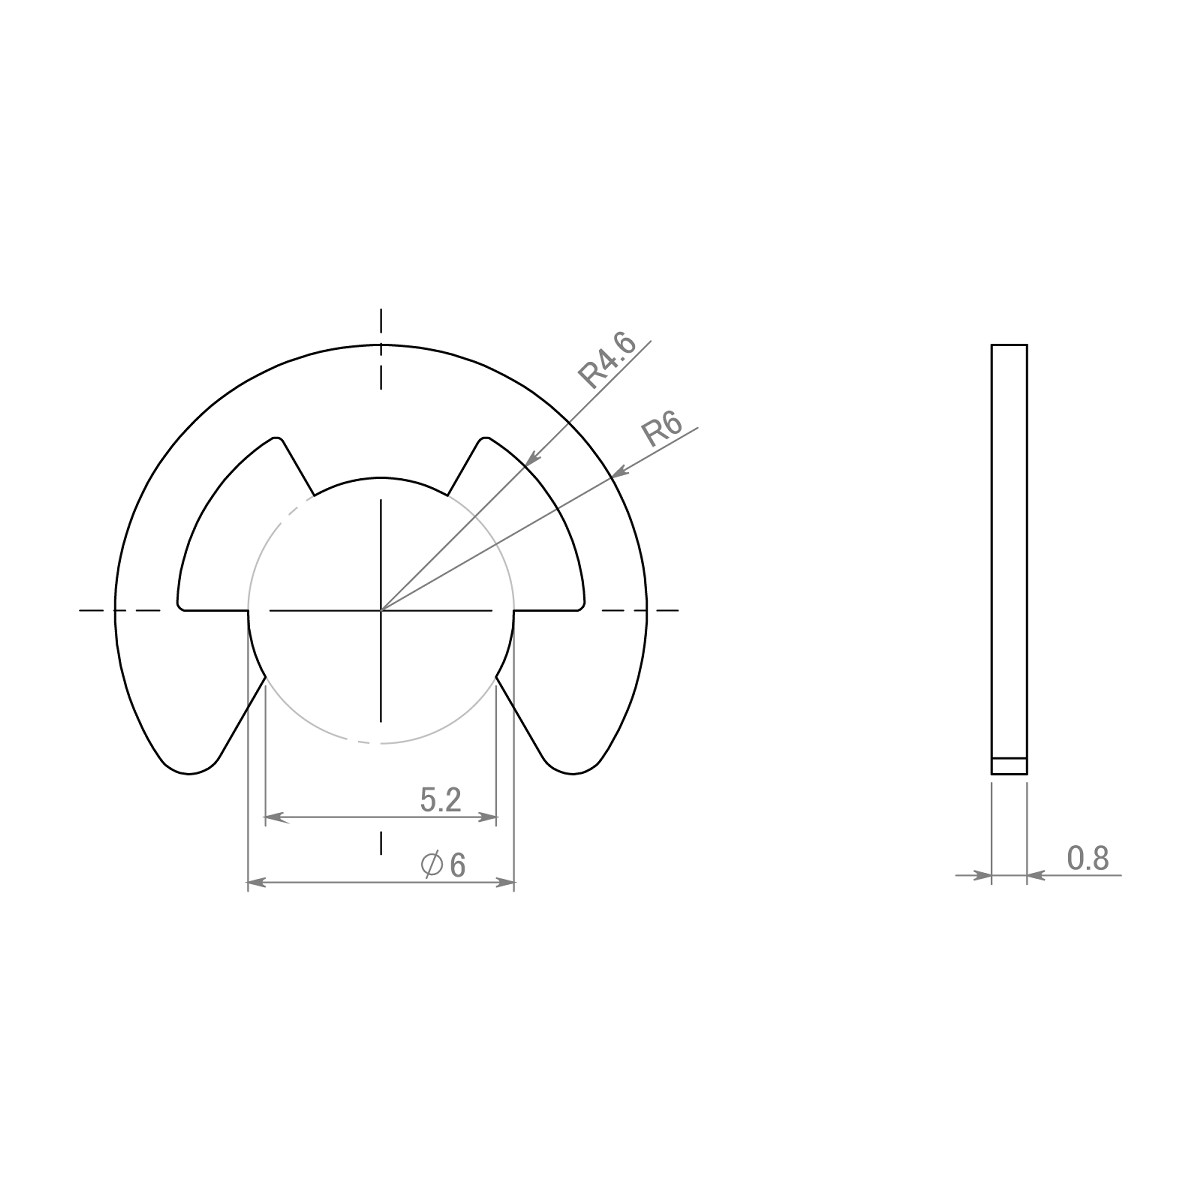 セイミツ工業製ジョイスティックレバー用 E形留め輪(Eリング) 呼び径Φ6 (2個) 【SR-E-P6】